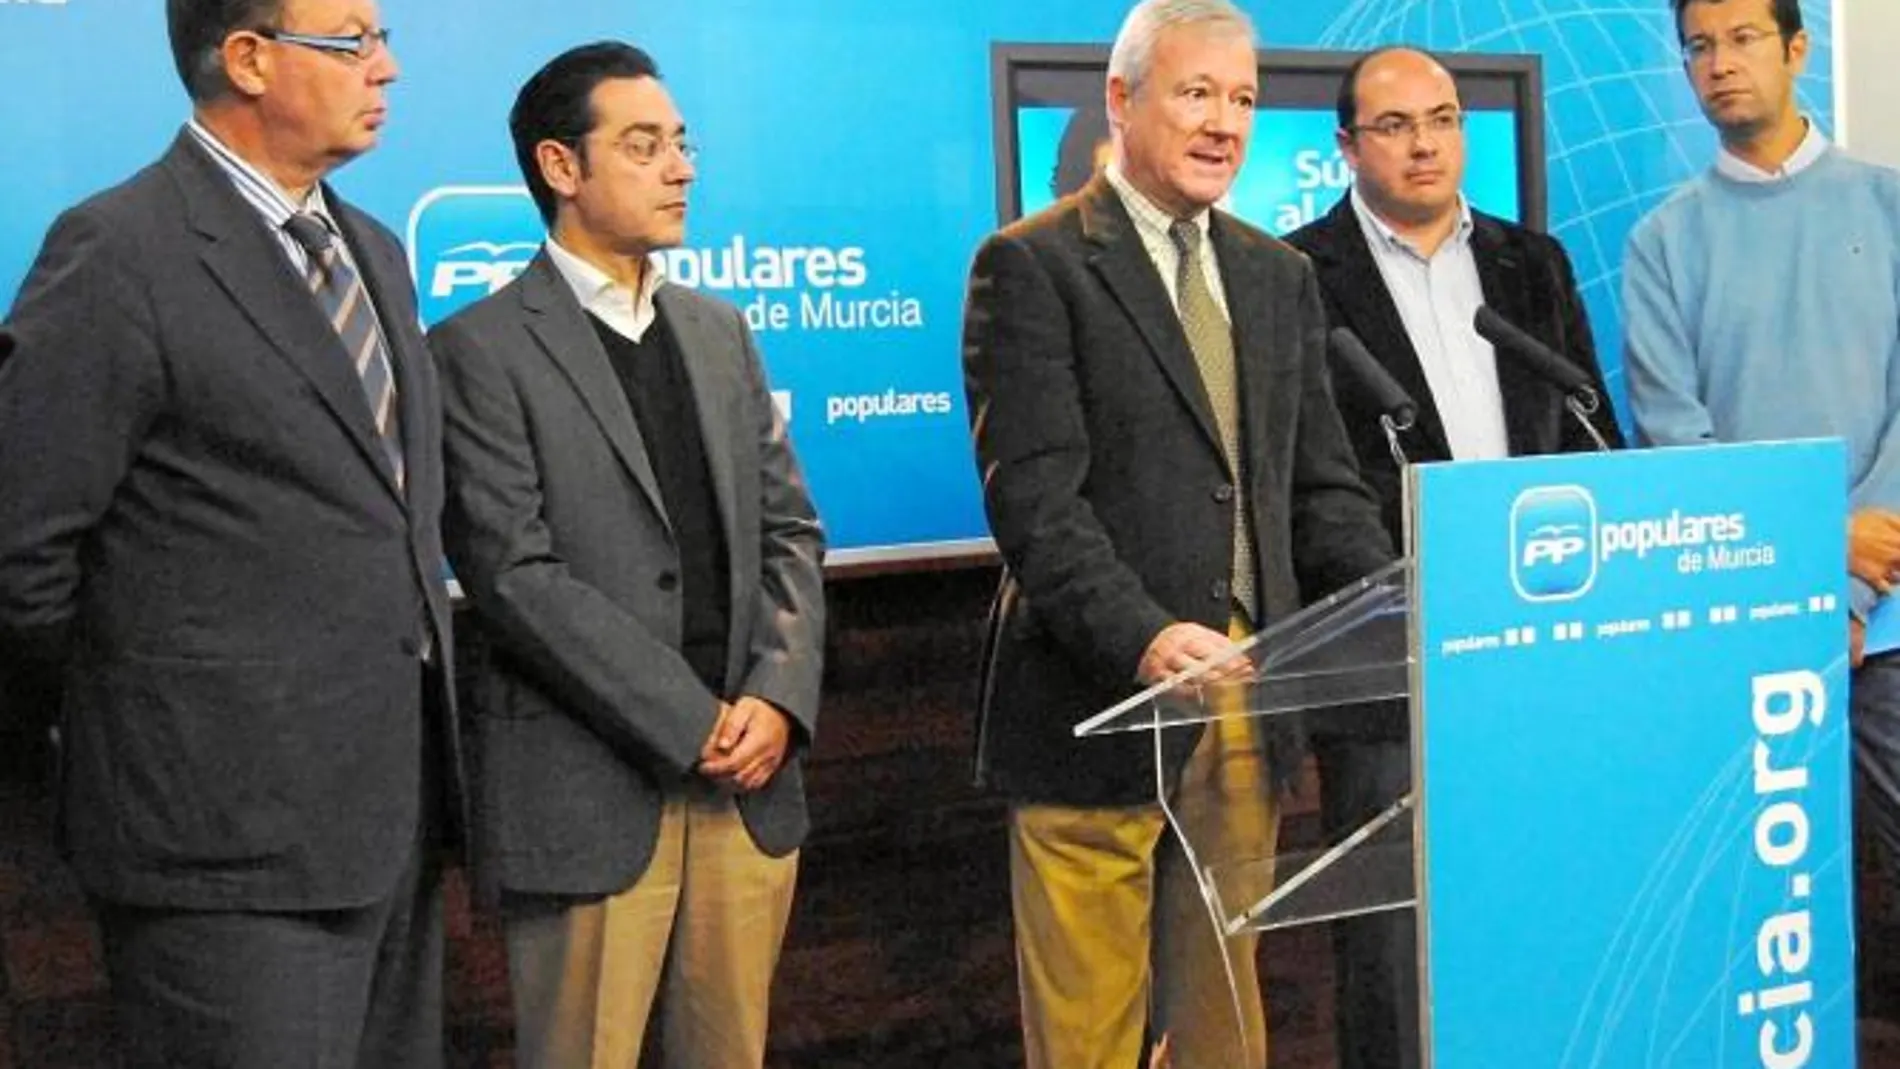 José Antonio Ruiz Vivo, José Gabriel Ruiz, Ramón Luis Valcárcel, Pedro Antonio Sánchez y Juan Carlos Ruiz